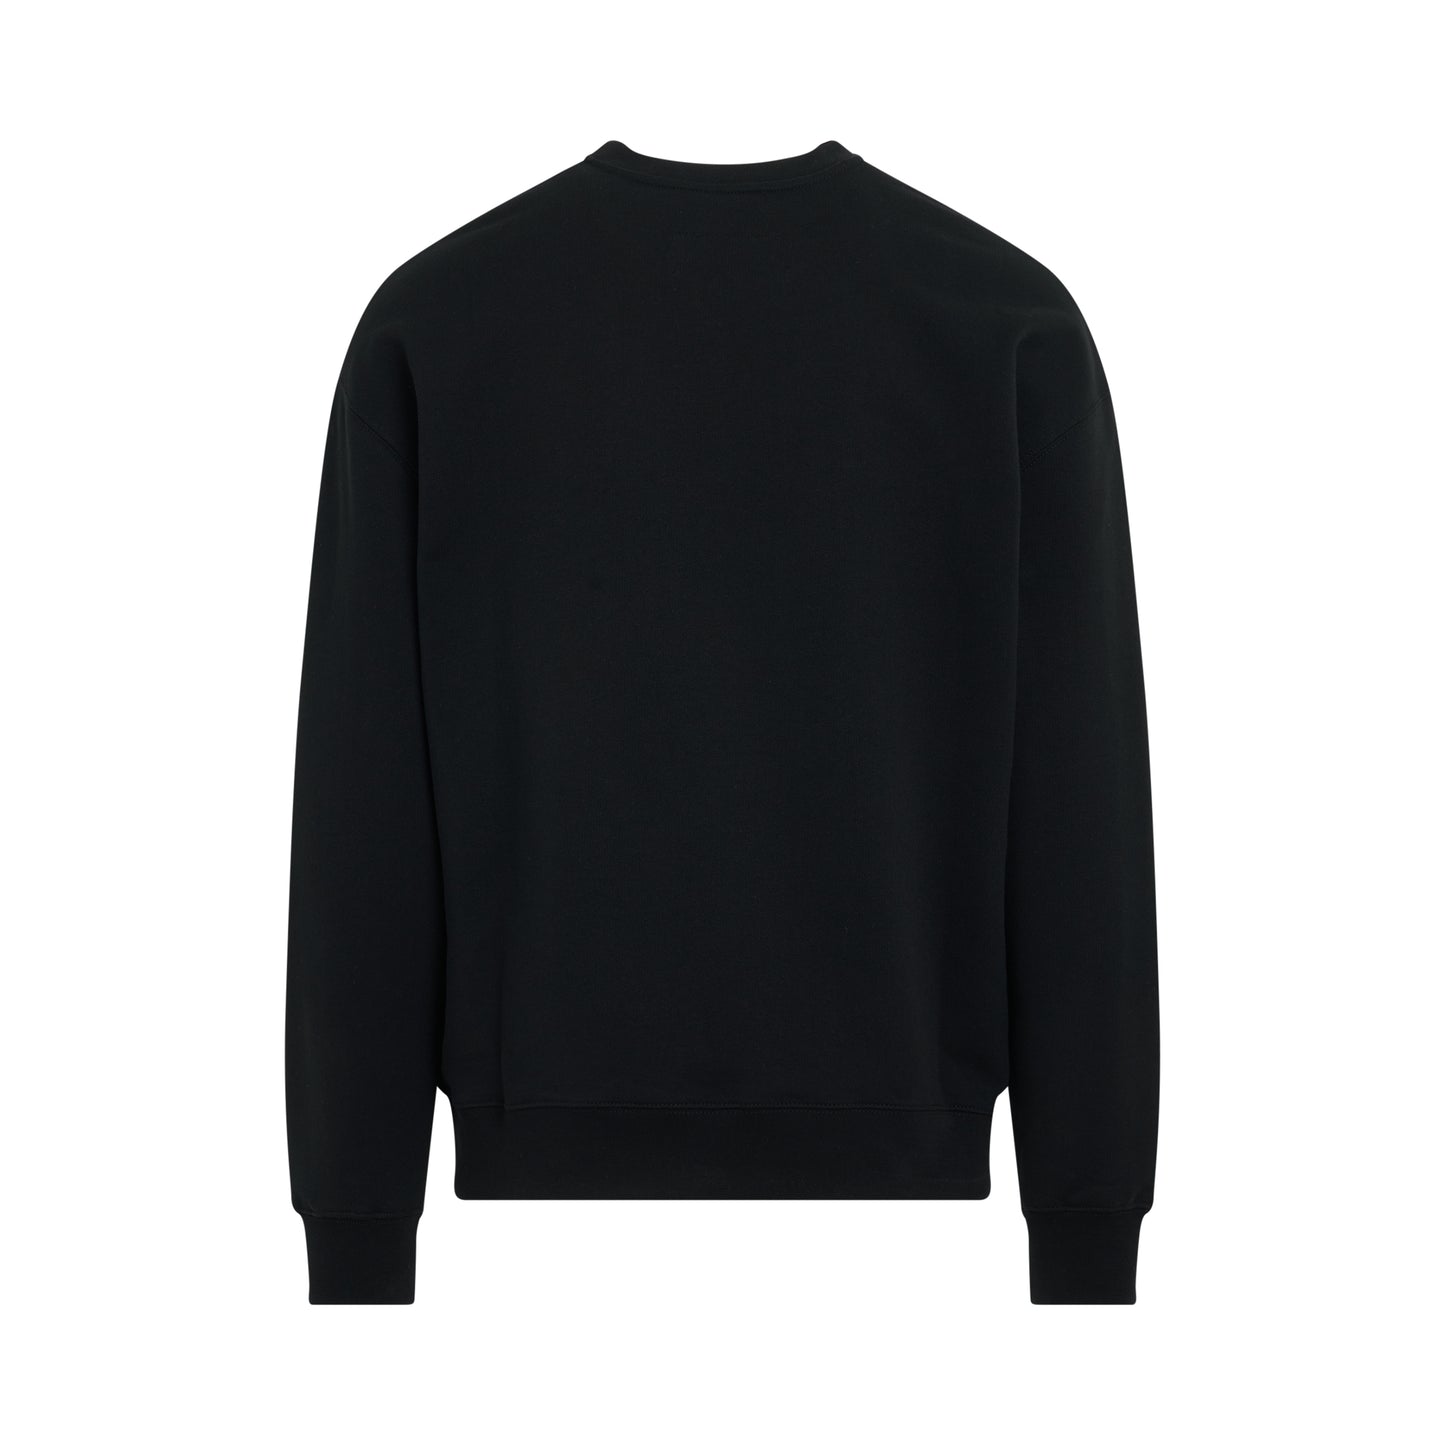 Essential Sweatshirt in Black